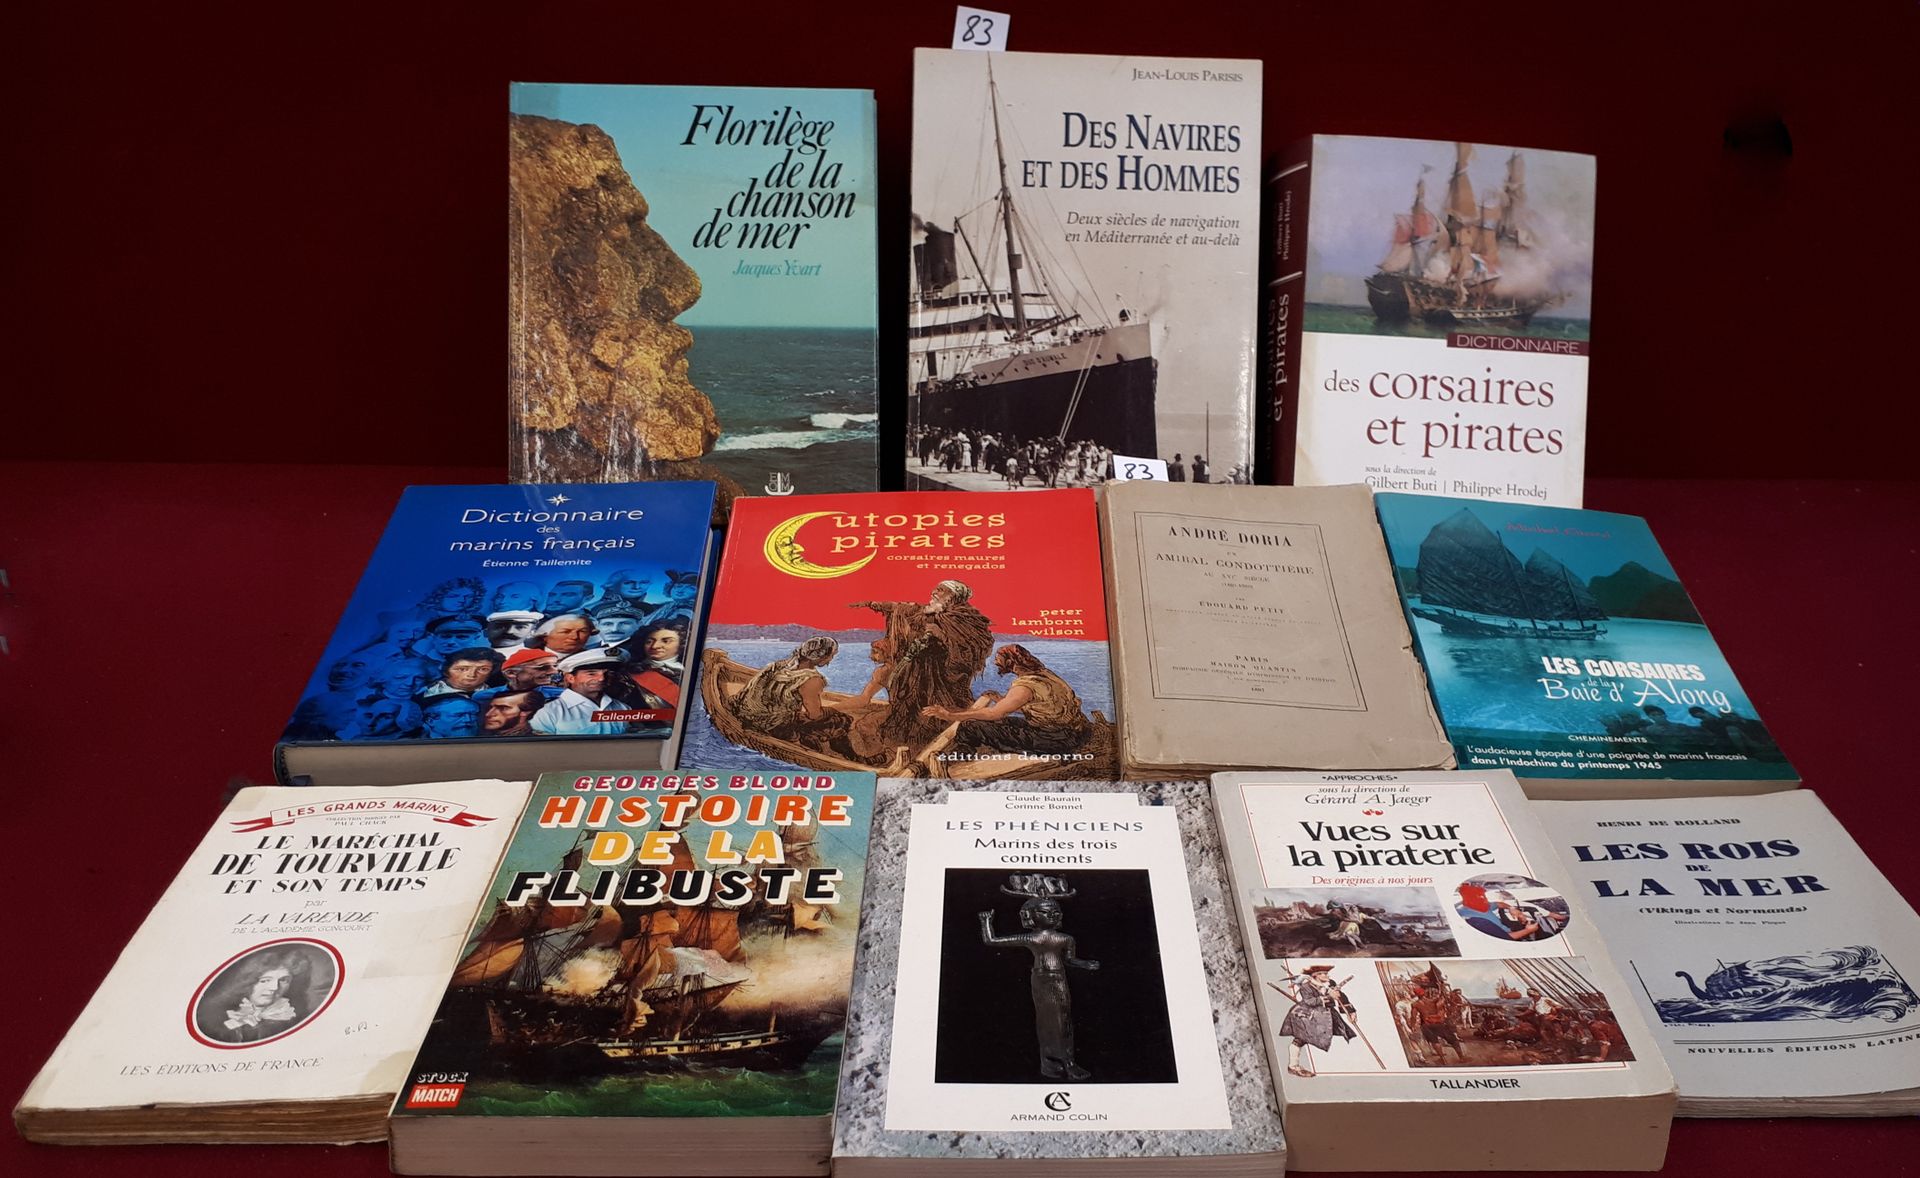 La Mer, les Pirates lot de 12 ouvrages sur la piraterie, les marins dont : un am&hellip;